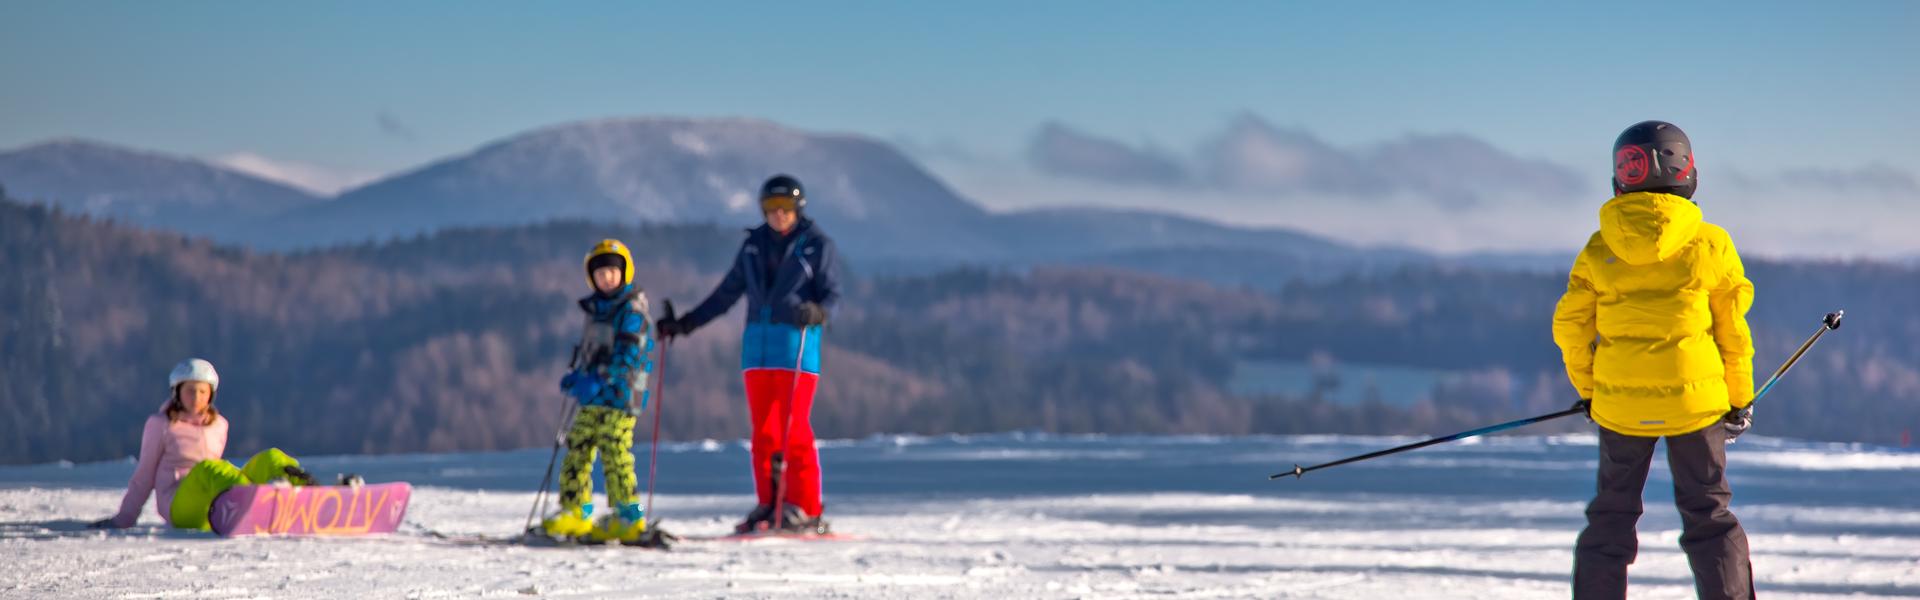 Narciarze i snowboardzistka ubrani w kolorowe stroje narciarskie na ośnieżonej łączce na tle gór